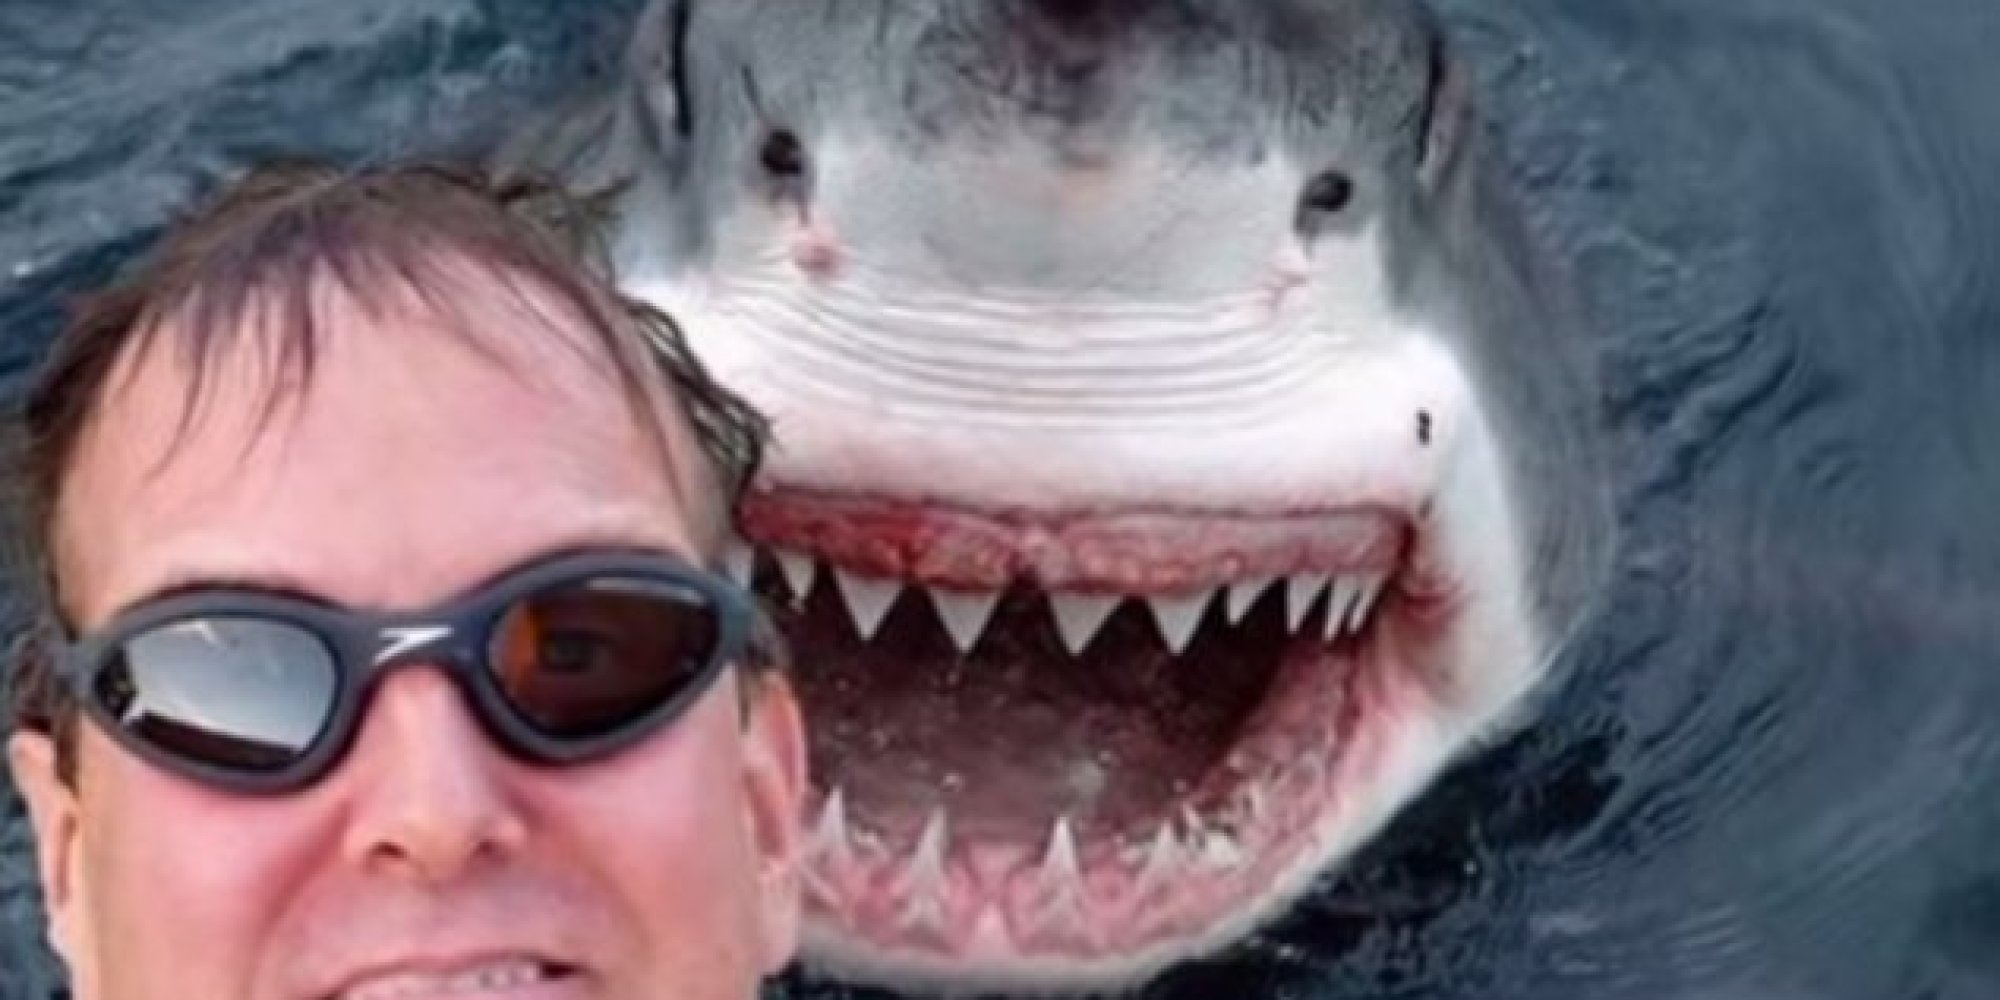 بالأرقام: صور الـ سيلفي  أخطر من أسماك القرش.. فانتبه